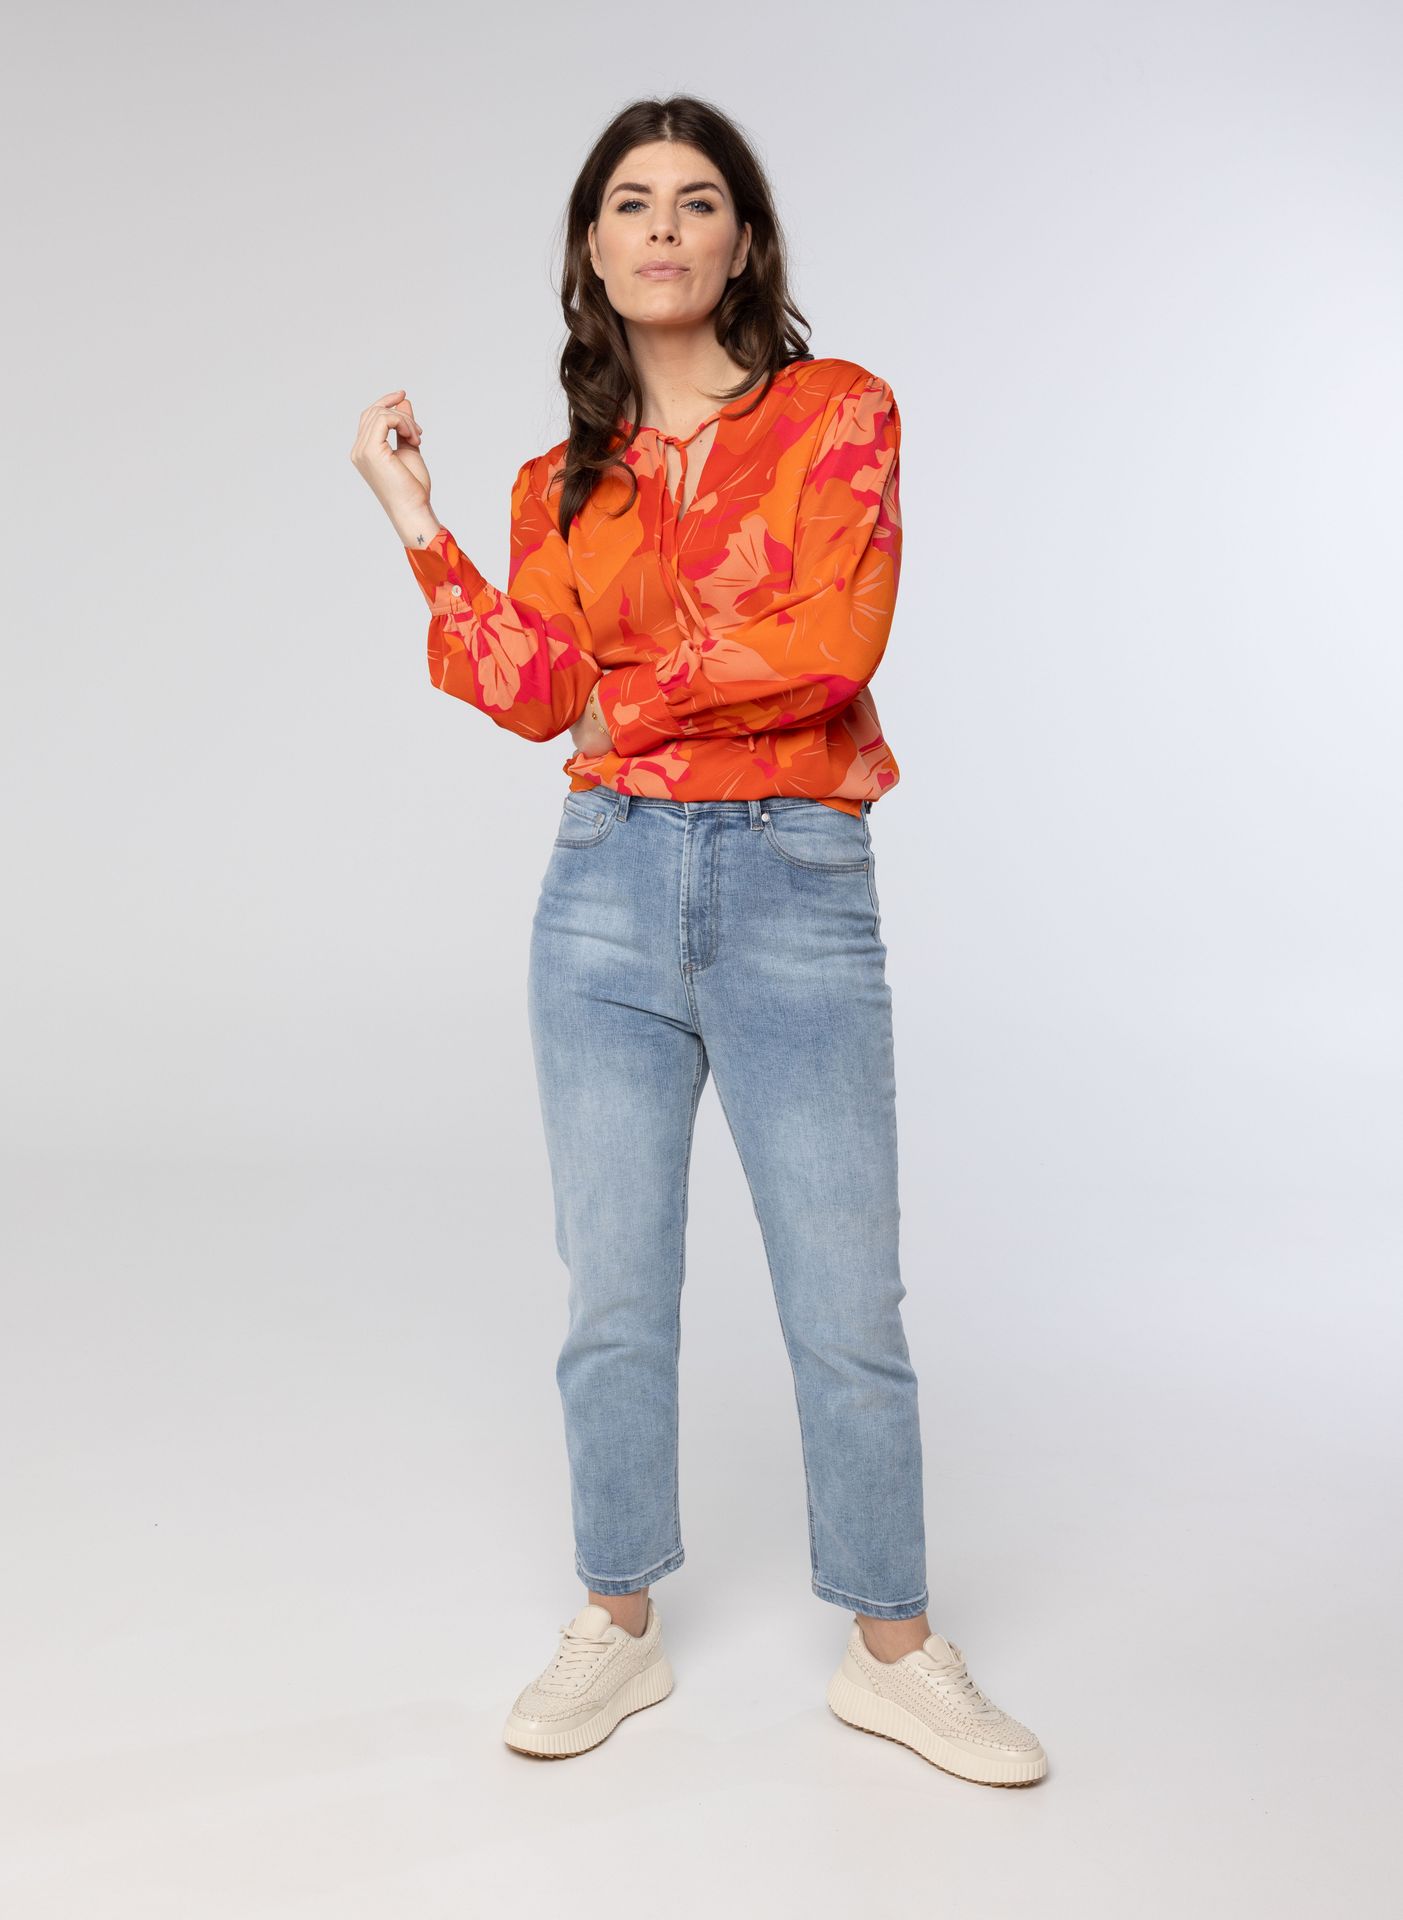 Norah Oranje blouse orange/pink 213735-739